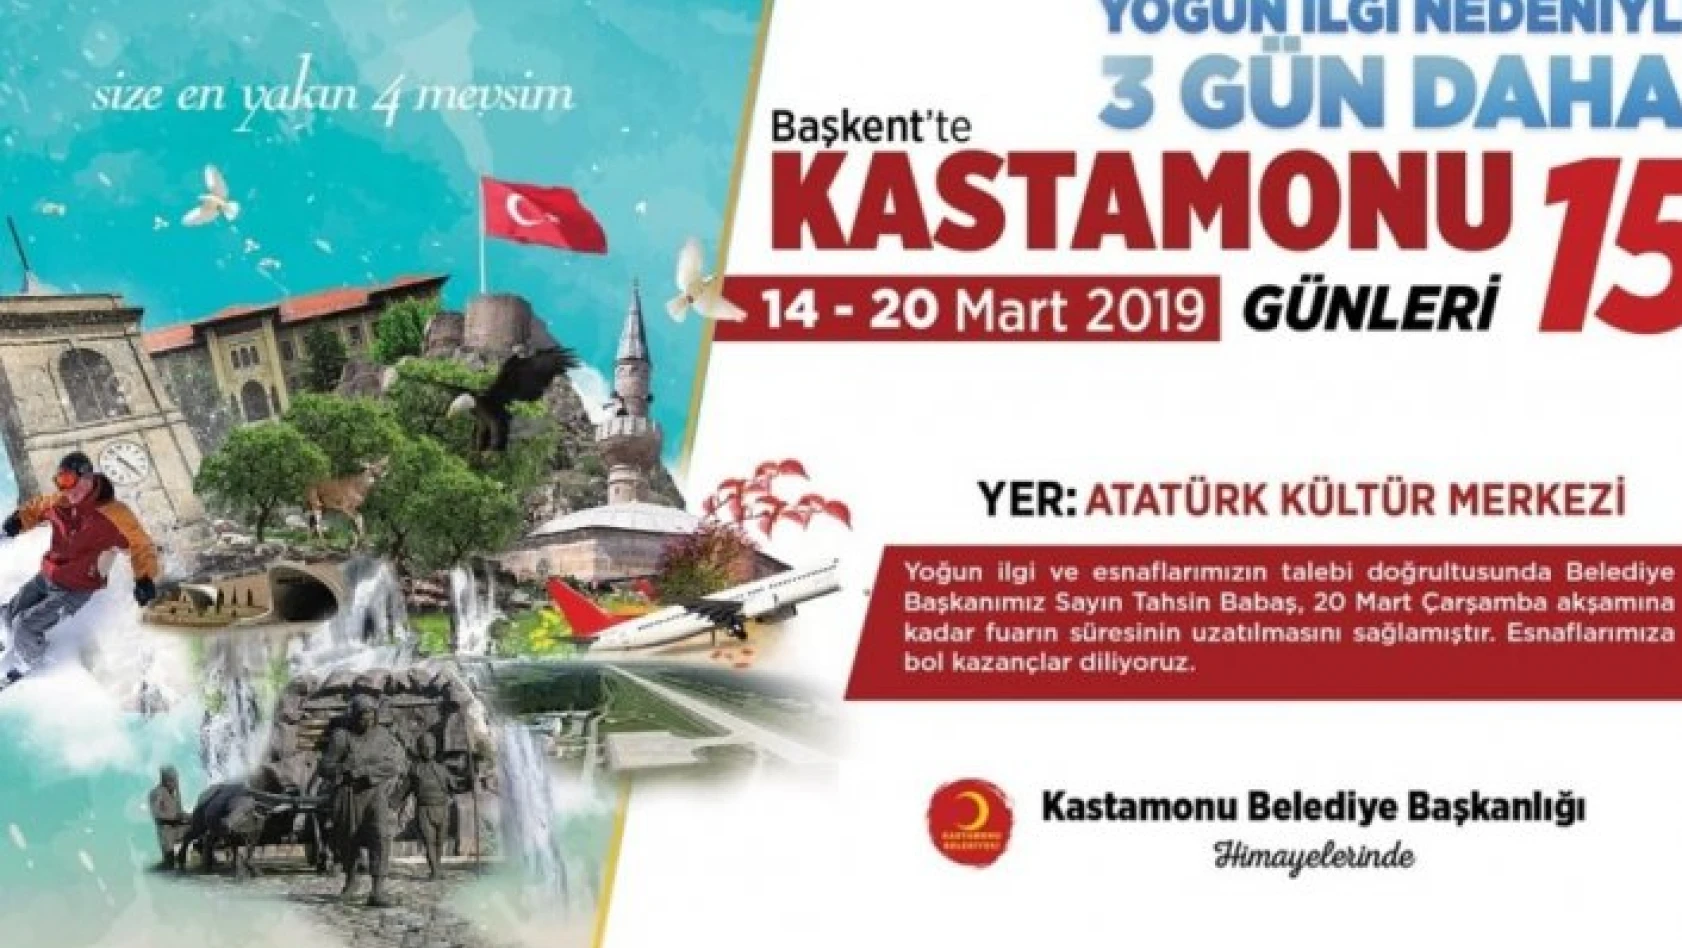 Ankara'daki Kastamonu Günlerine yoğun ilgi